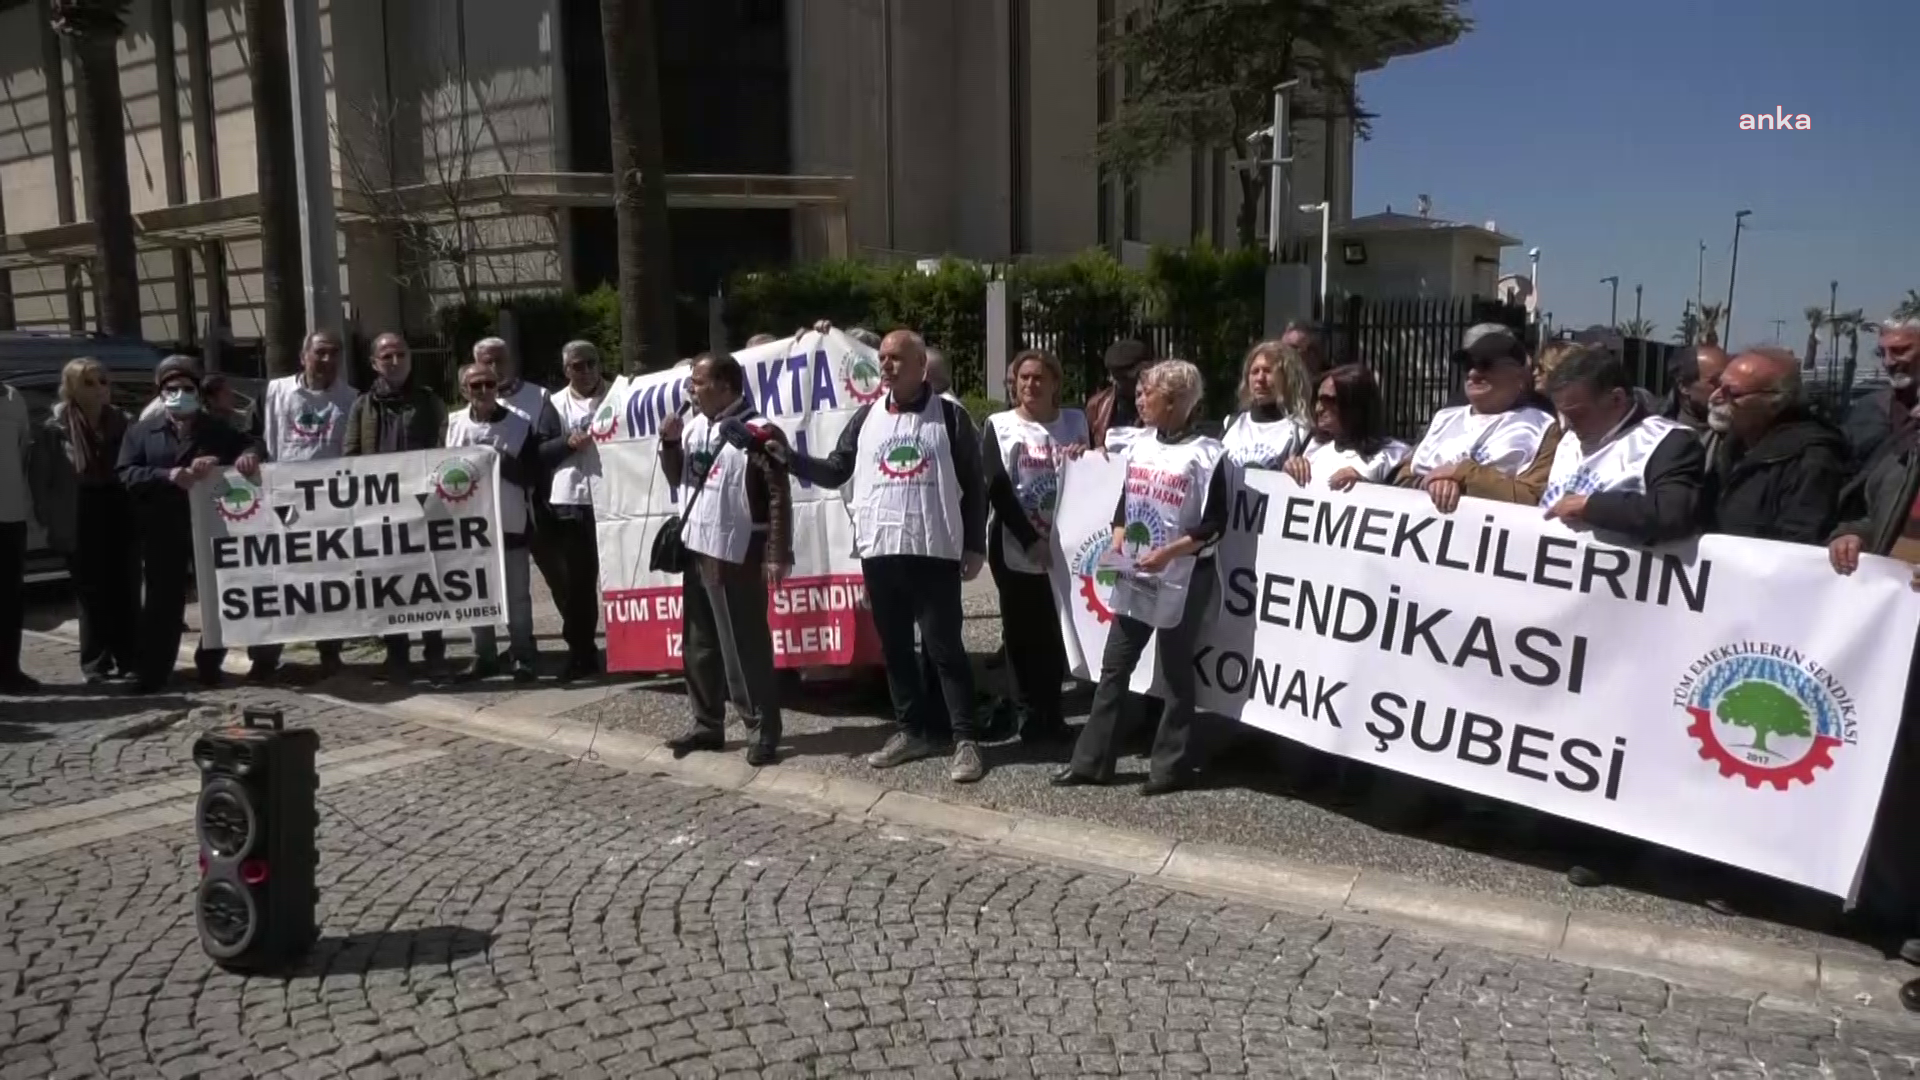 İzmir’de emekliler 7 bin 500 liranın üstündeki emekli maaşlarında artış yapılmamasına tepki gösterdi